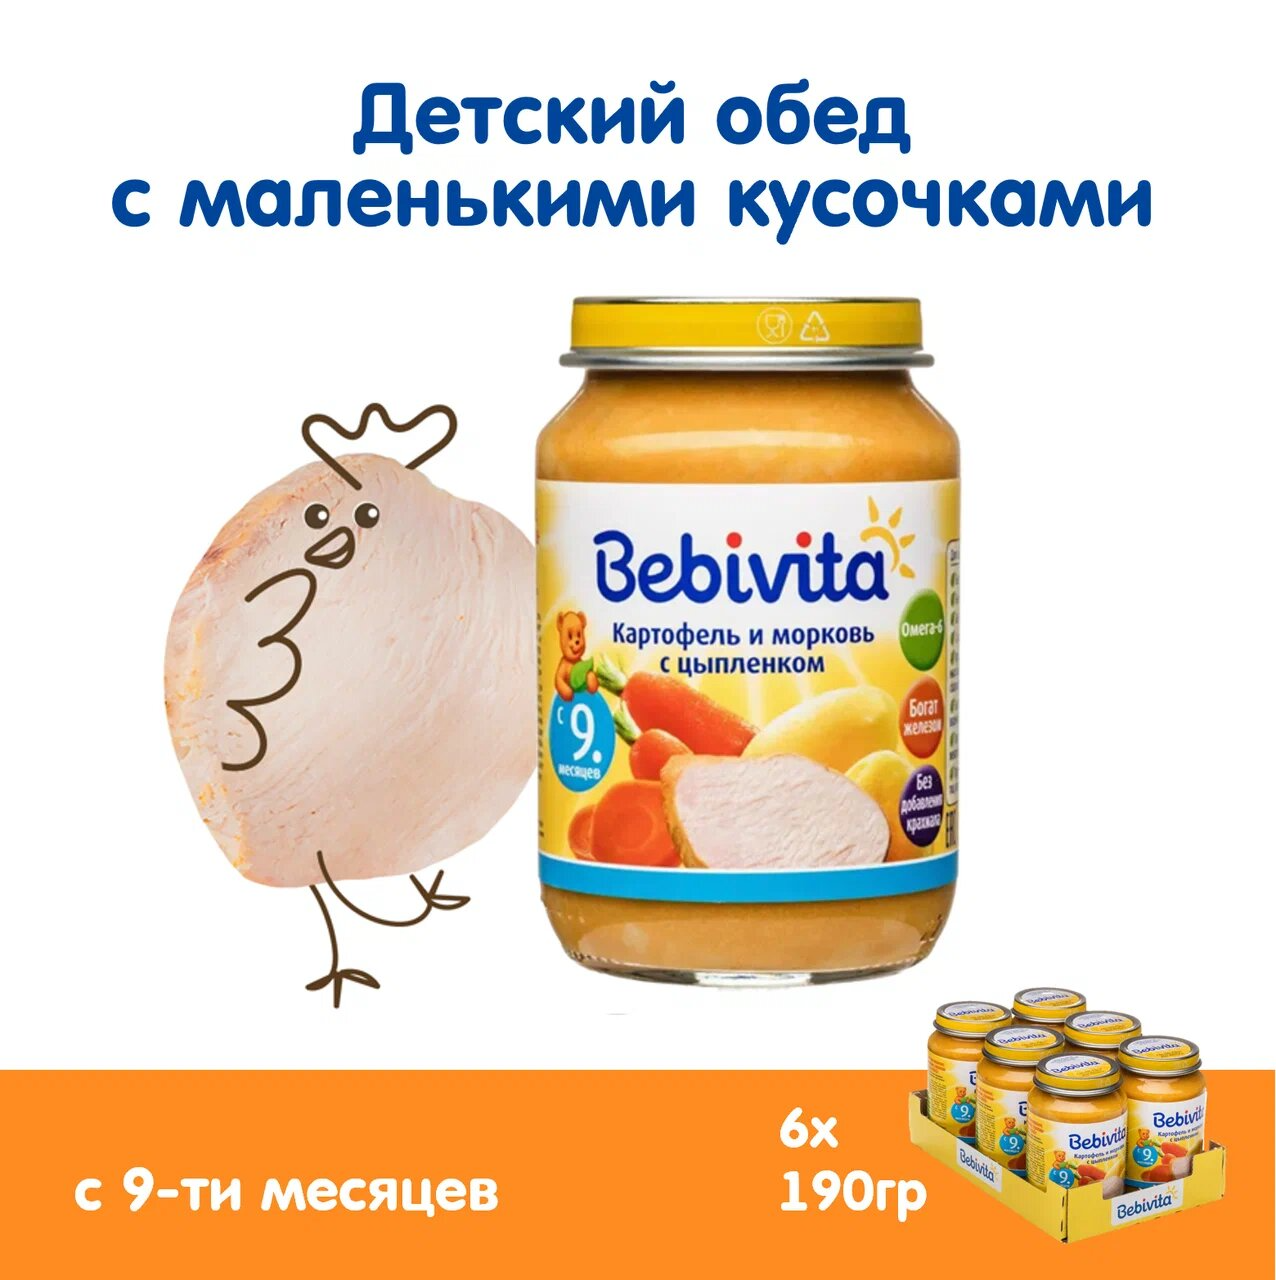 Детское пюре Bebivita "Картофель и морковь с цыпленком", обогащенное железом, 190 гр., 6 шт